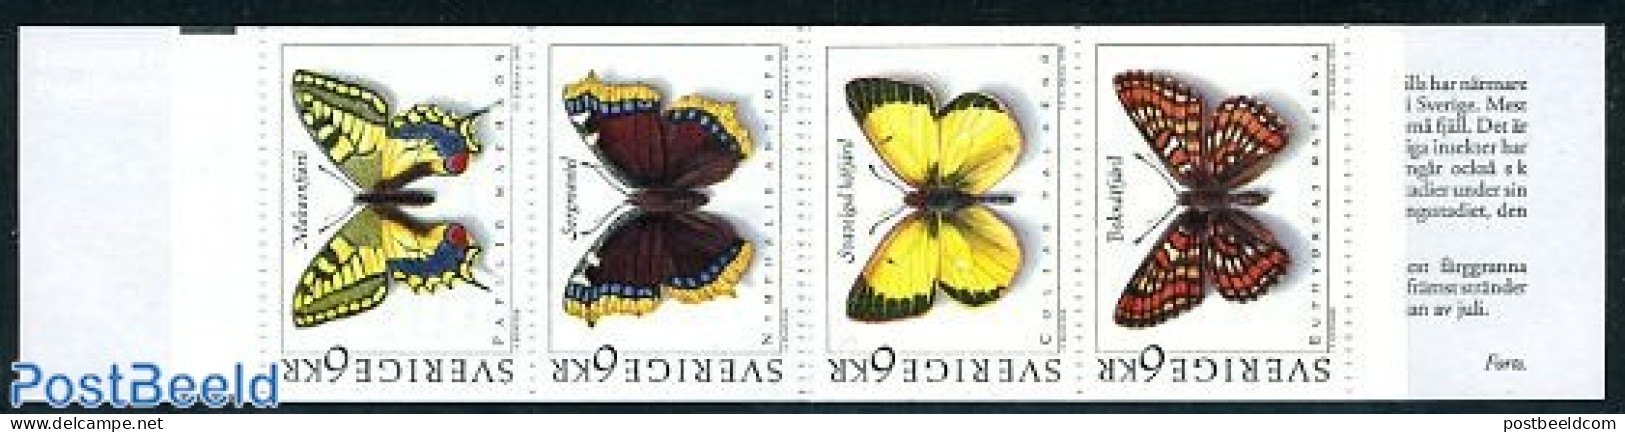 Sweden 1993 Butterflies Booklet, Mint NH, Nature - Butterflies - Stamp Booklets - Ongebruikt